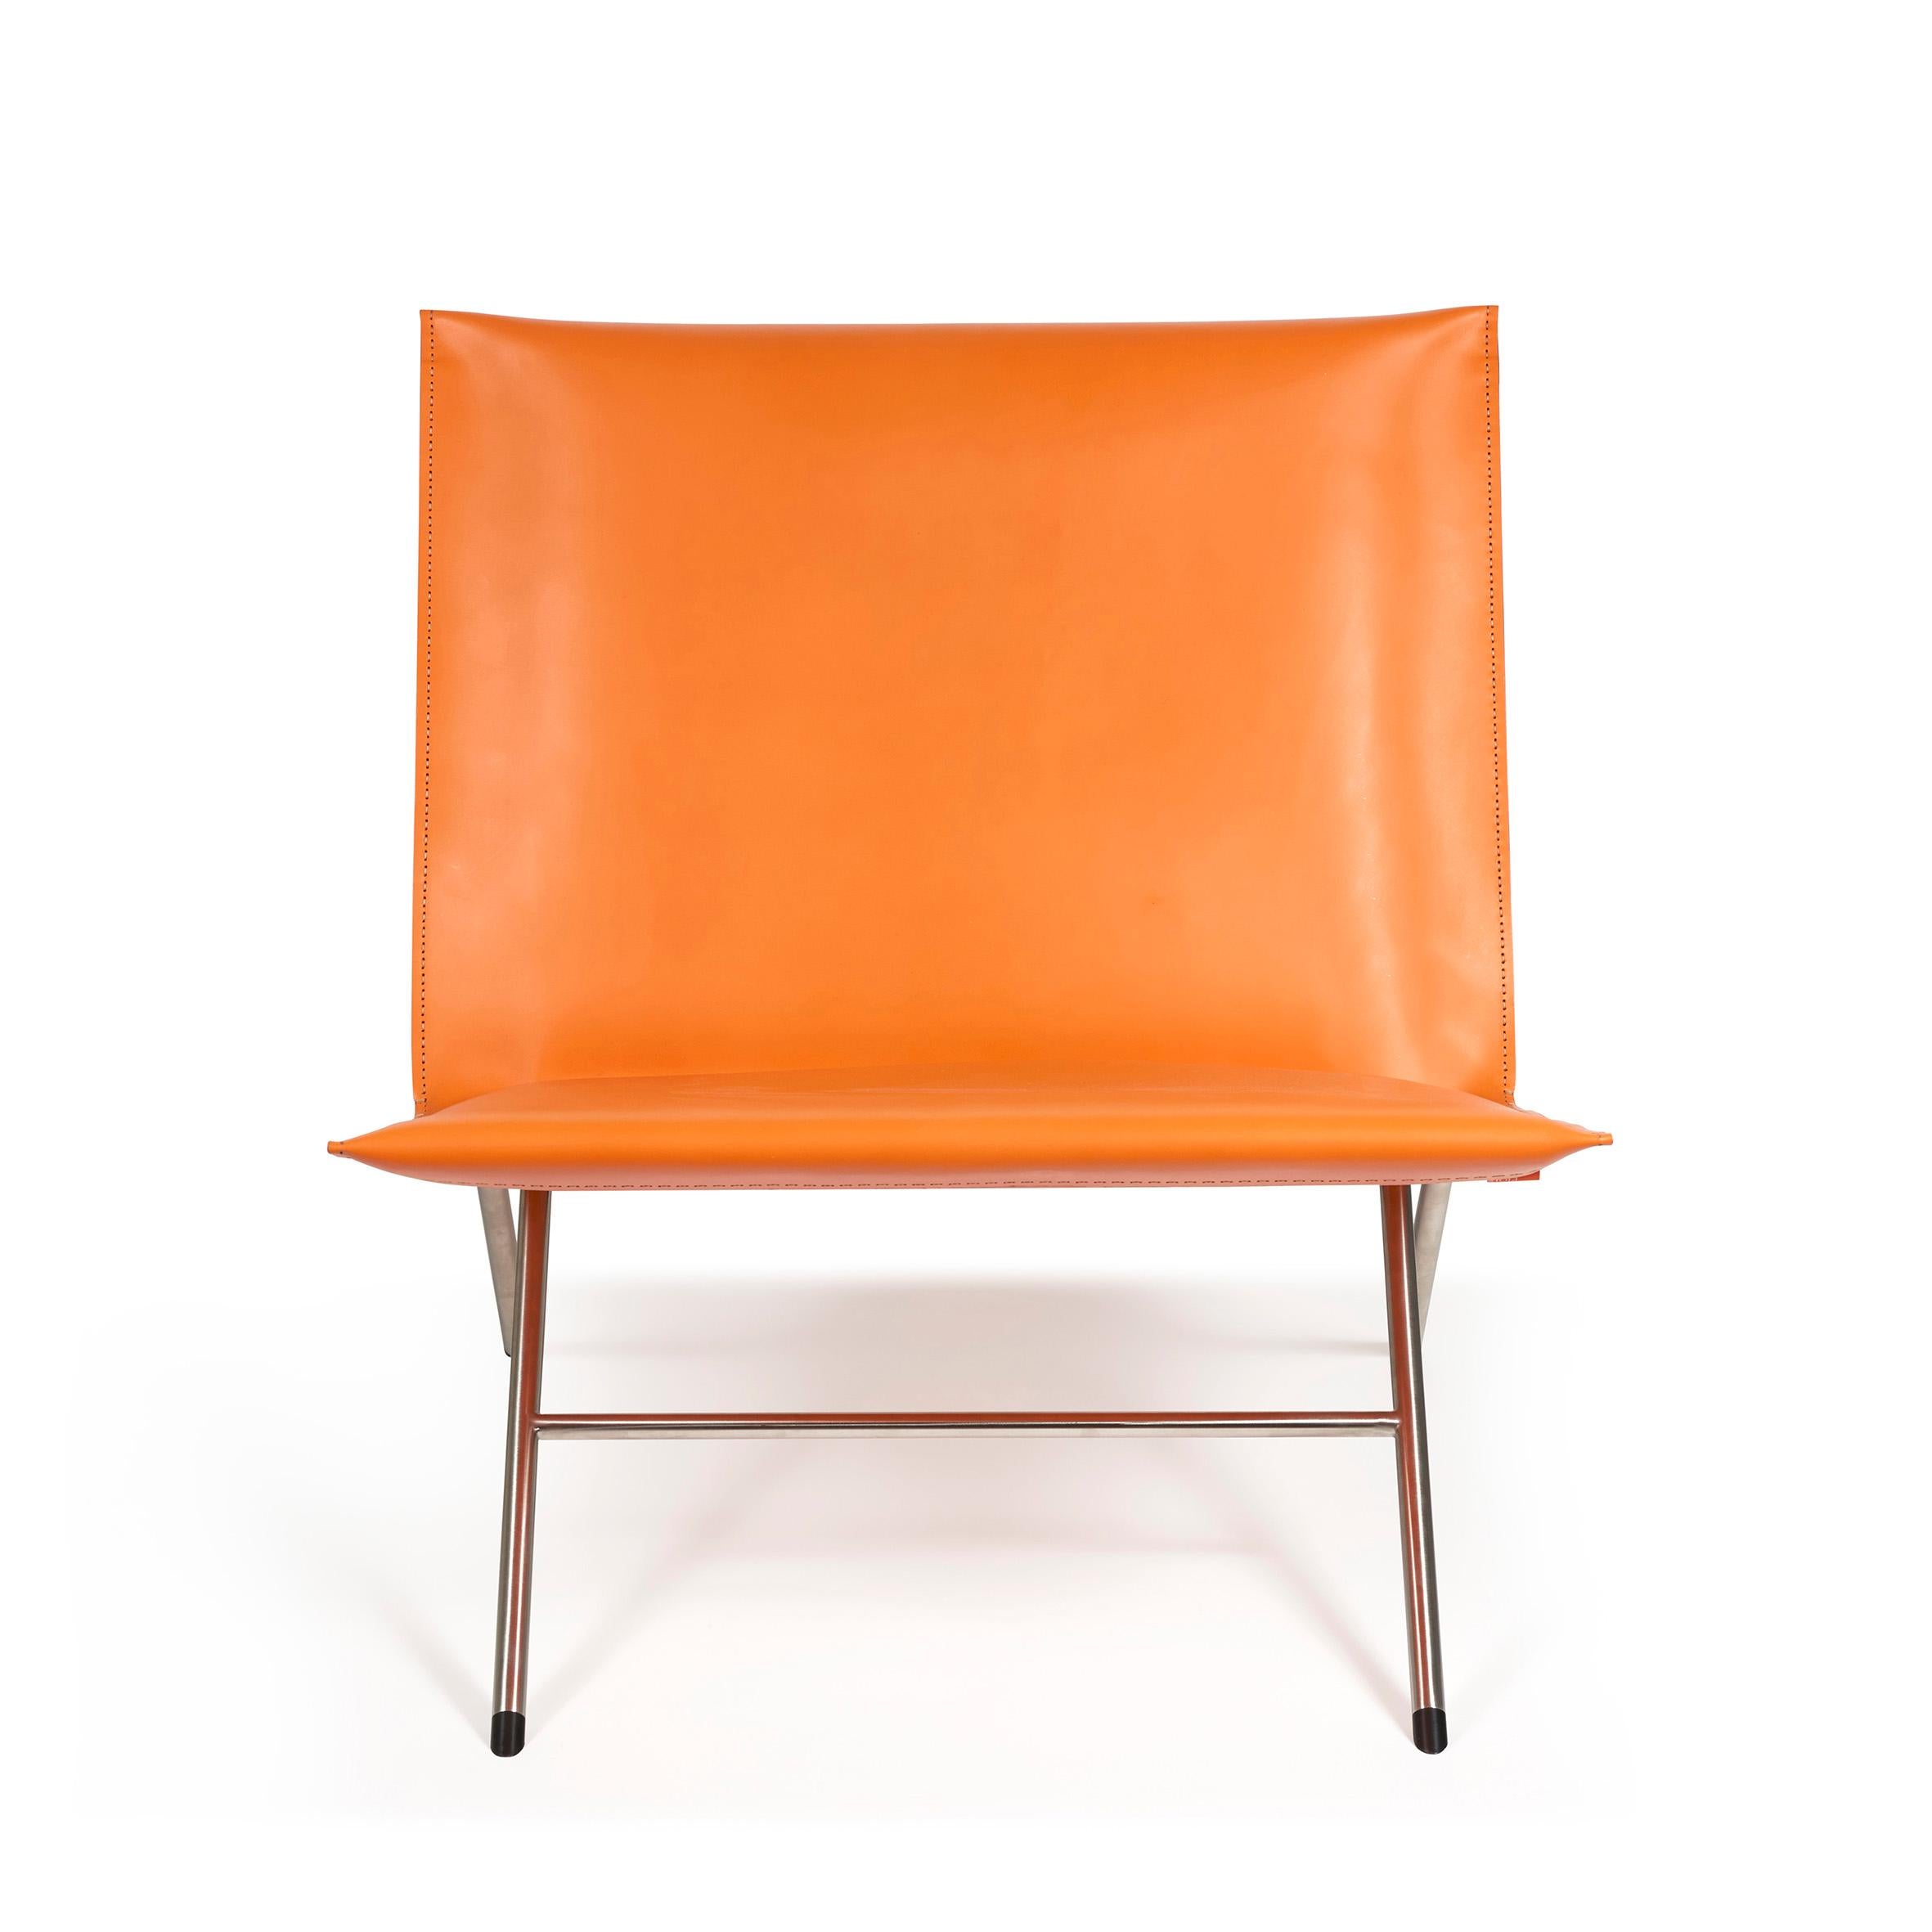 Gioia Meller-Marcovicz.

Inclinaison

Une chaise longue pliable en acier inoxydable et en cuir Arancio.
Le dossier et l'assise rectangulaires sont recouverts de cuir teinté sur une structure pliante en acier inoxydable émettant quatre pieds